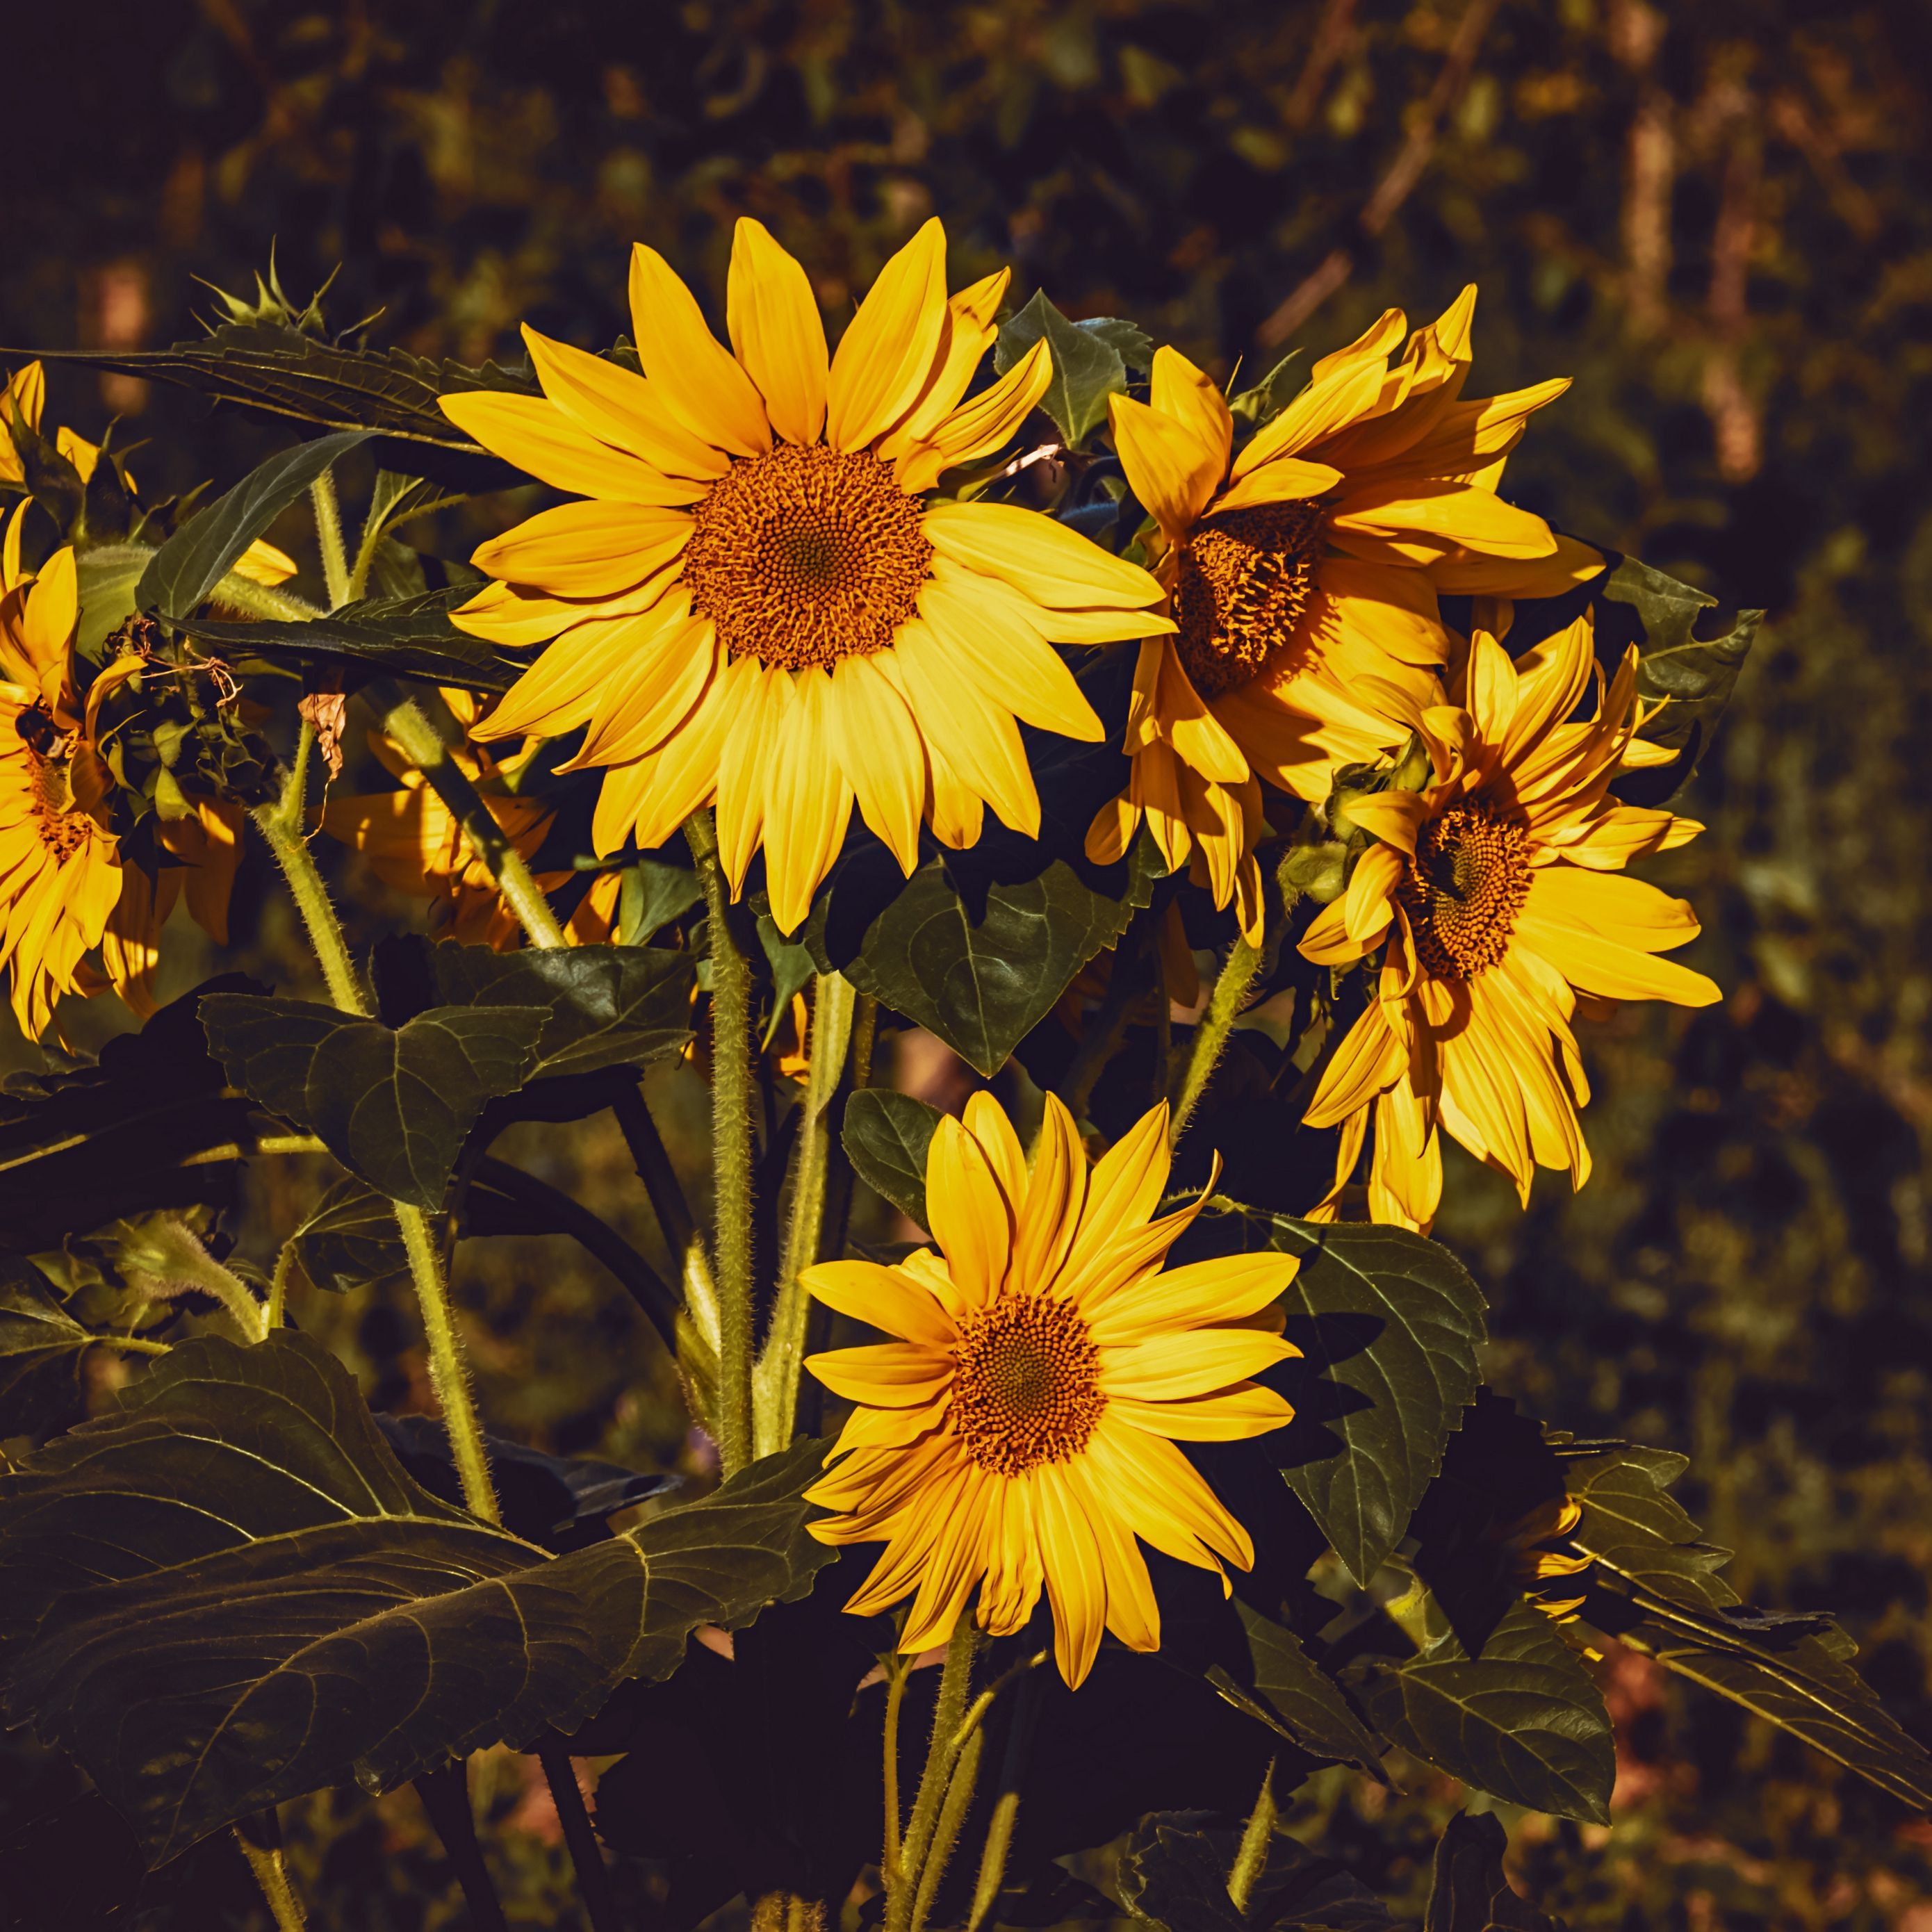 Download wallpaper 2780x2780 sunflower, flowers, summer, yellow